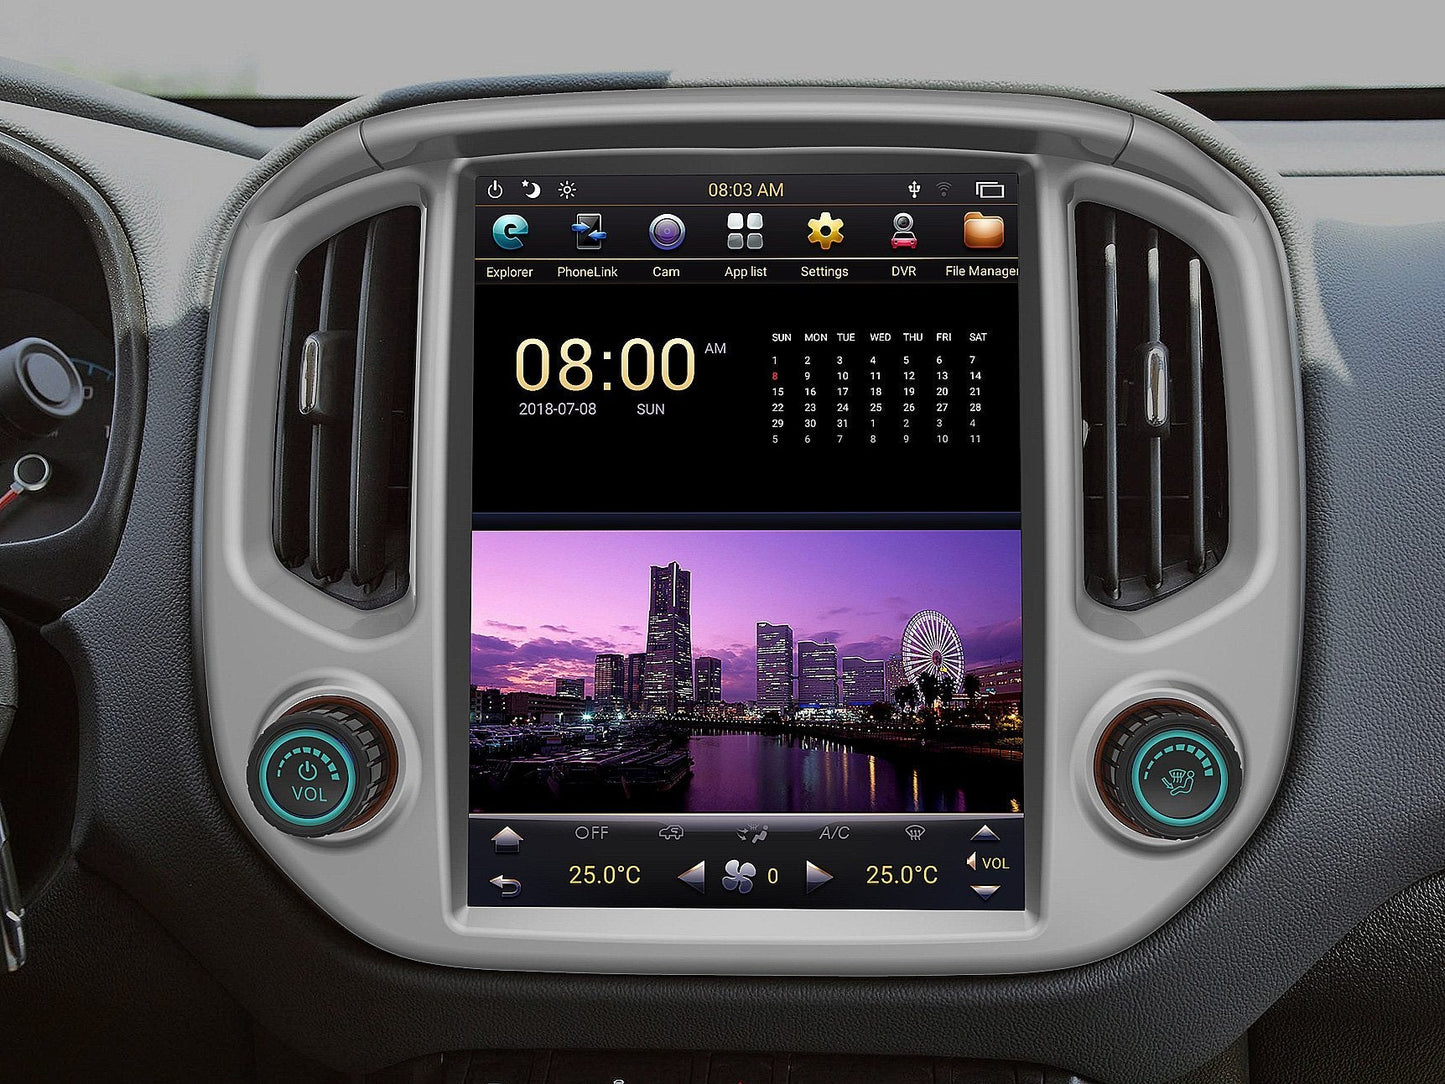 [ Open box ] 12.1" Vertical Screen Android Navigation Radio for Chevrolet Colorado GMC Canyon 2015 - 2018